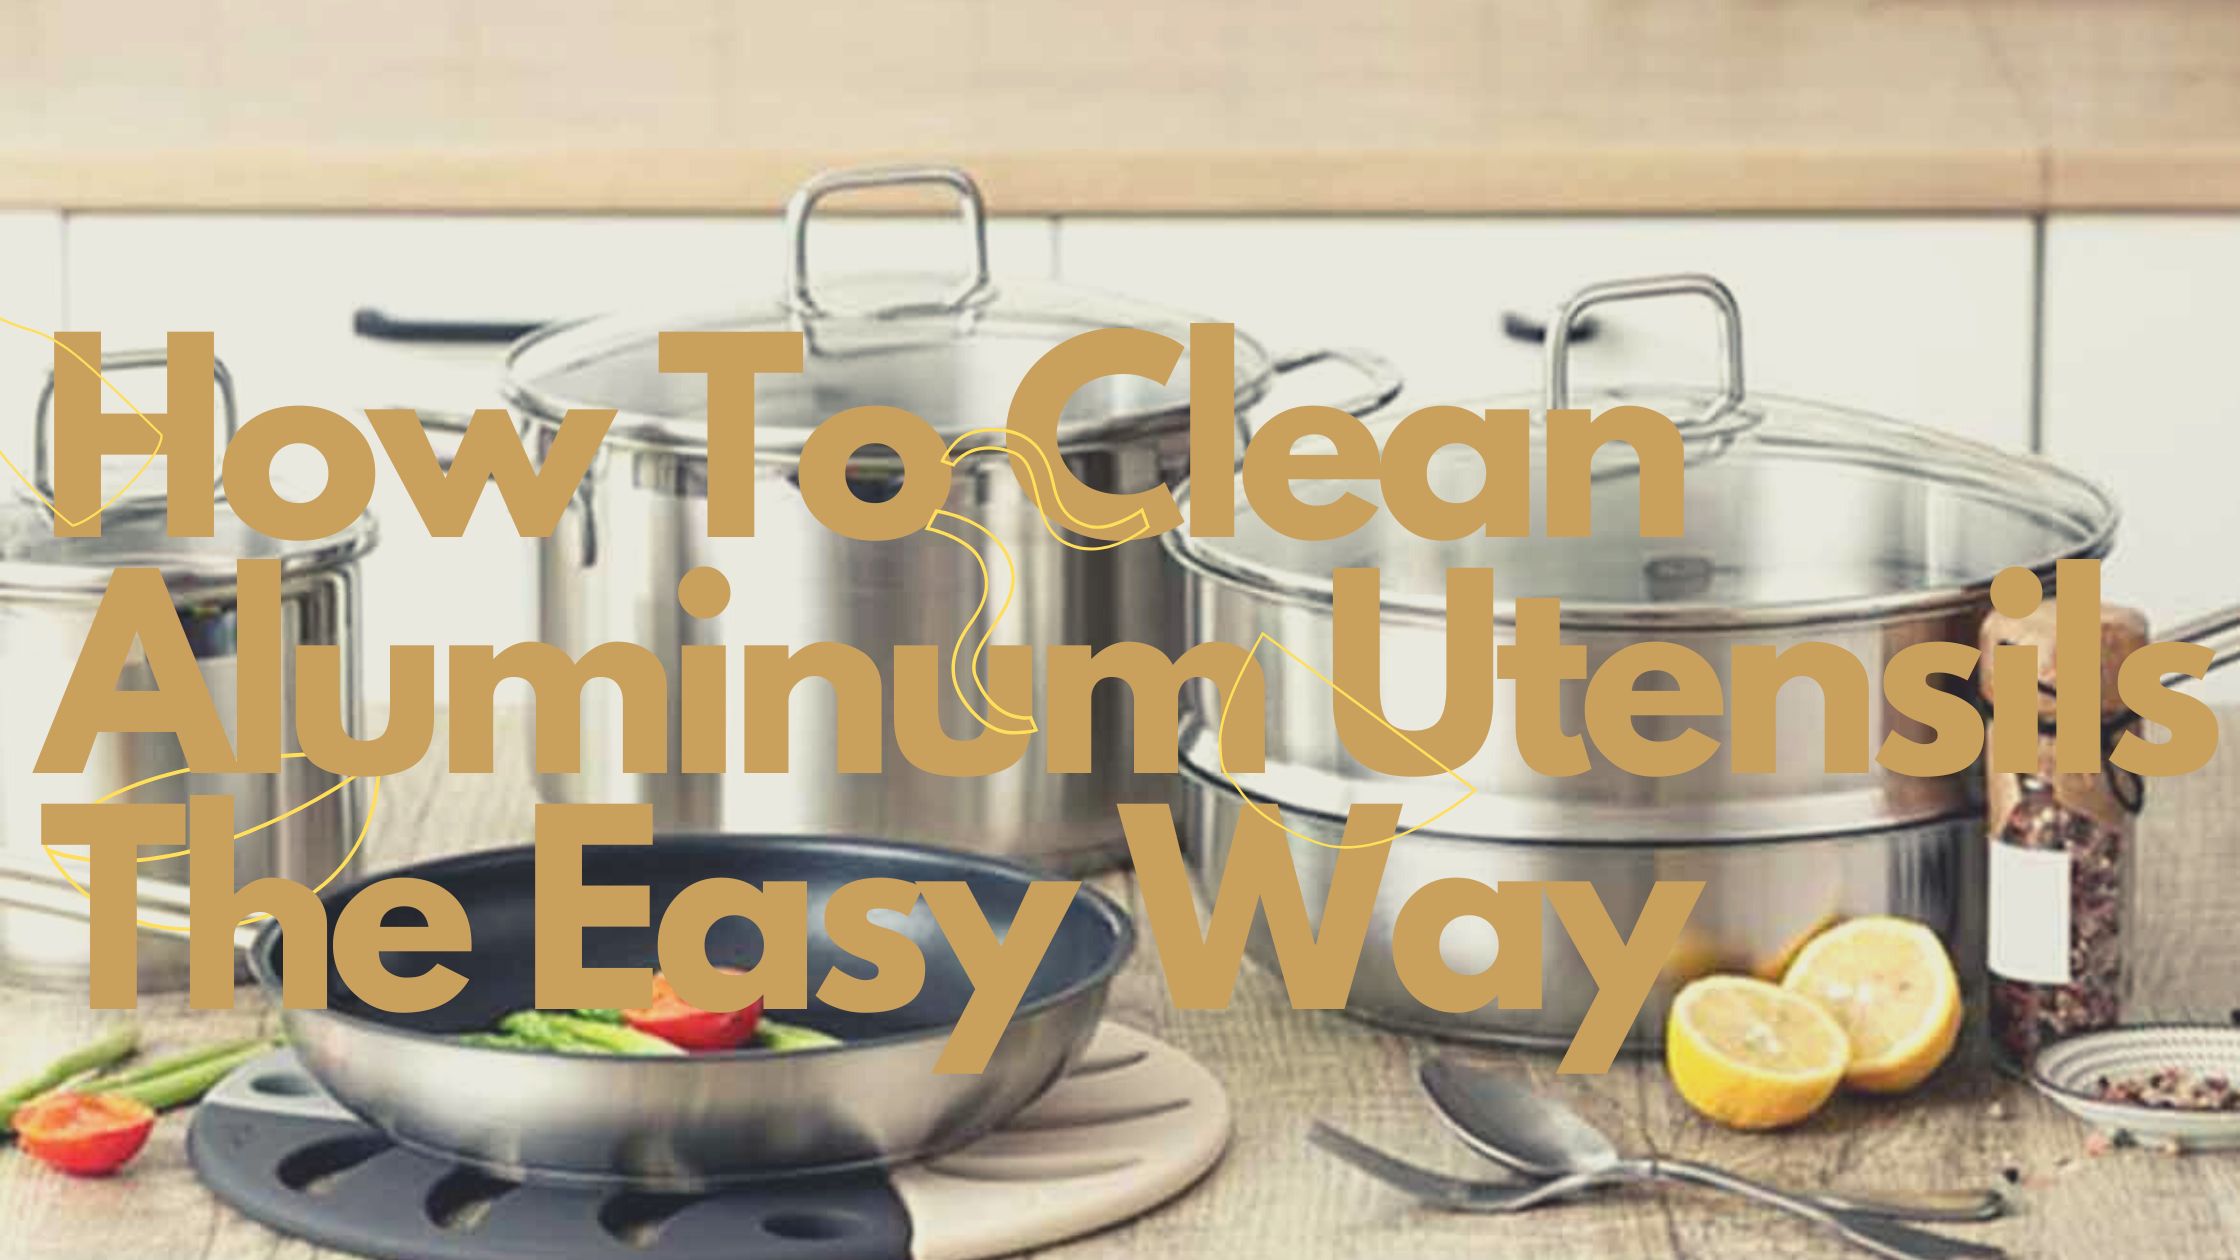 How To Clean Aluminum Utensils